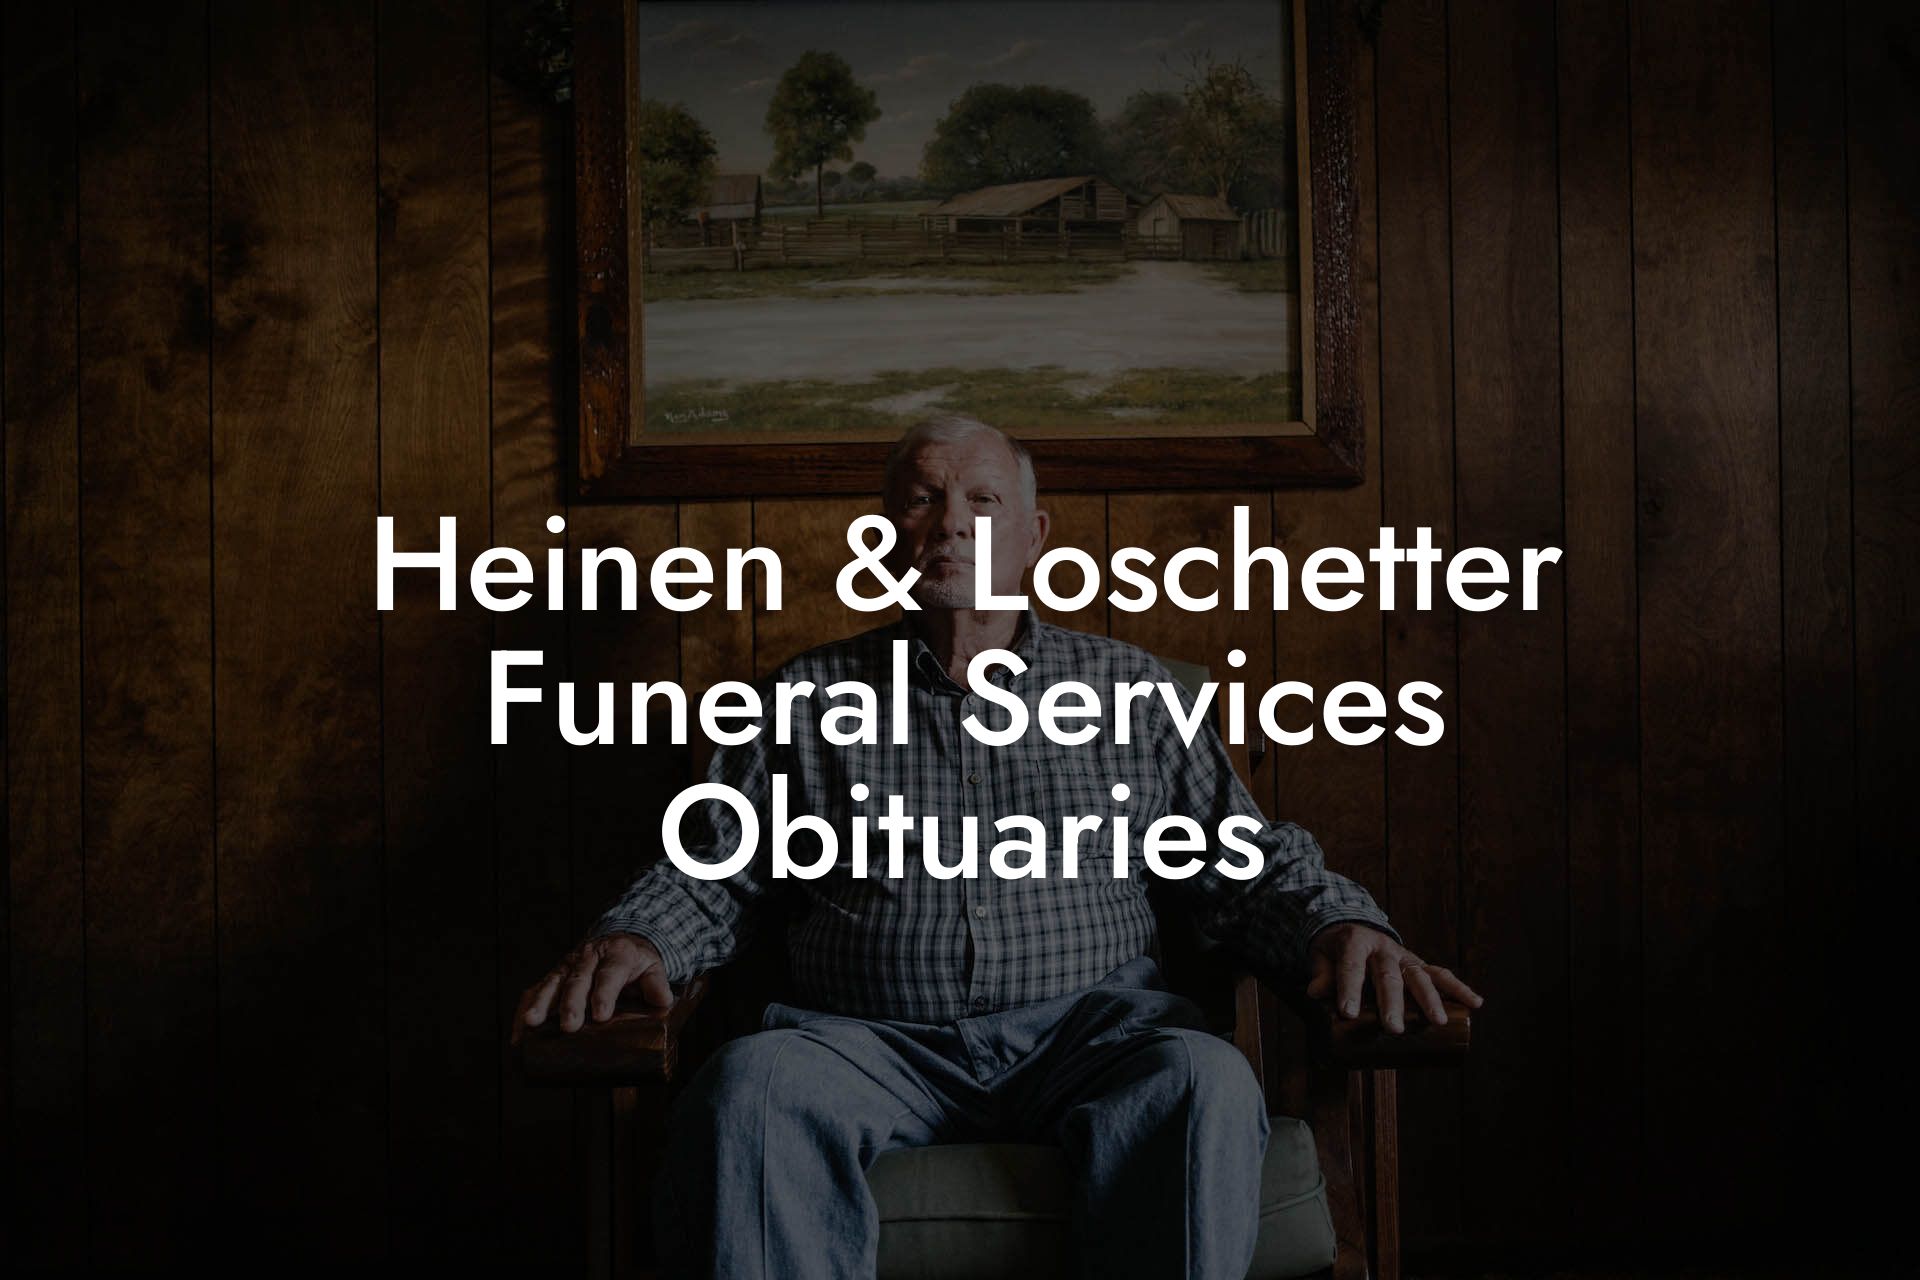 Heinen & Loschetter Funeral Services Obituaries